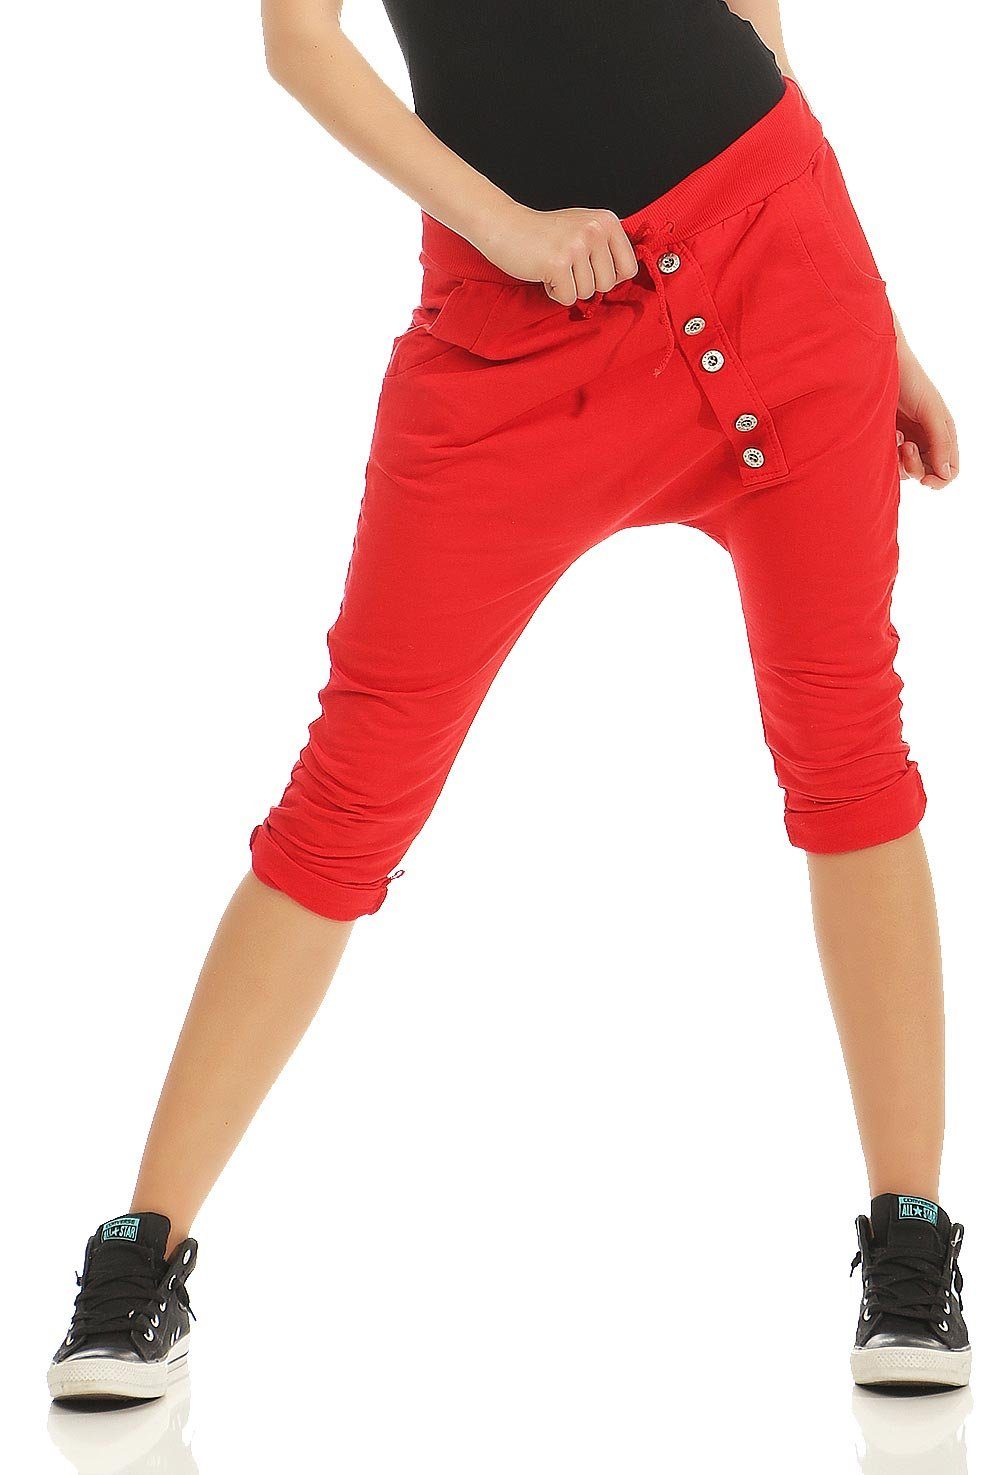 malito more than fashion Caprihose 8015 Sommer Sport Hose mit elastischem Jerseybund Einheitsgröße rot